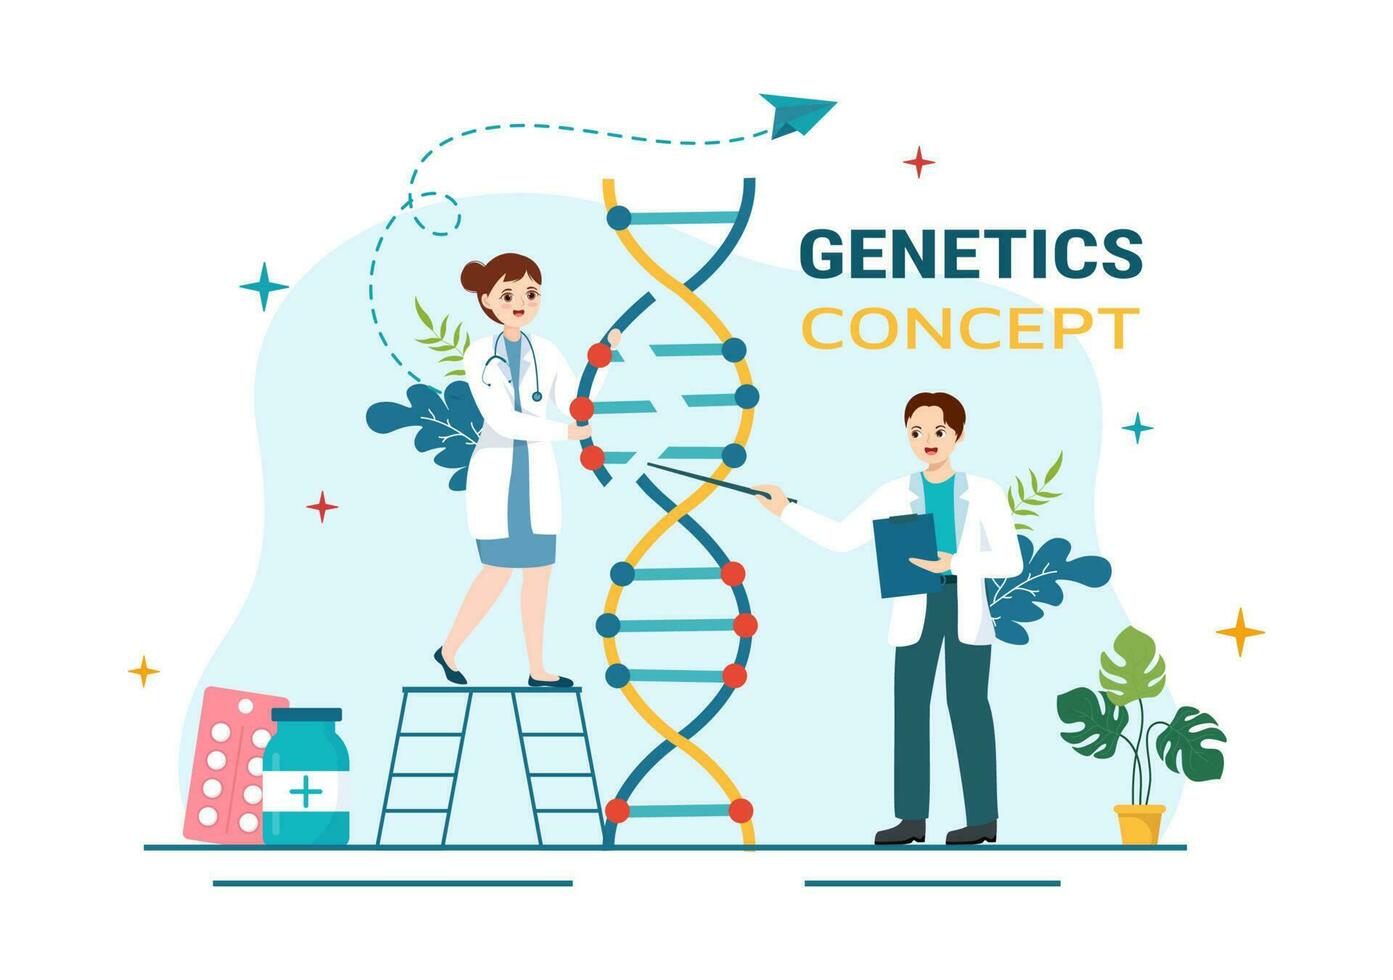 génétique science concept vecteur illustration avec ADN molécule structure et science La technologie dans soins de santé plat dessin animé main tiré modèles